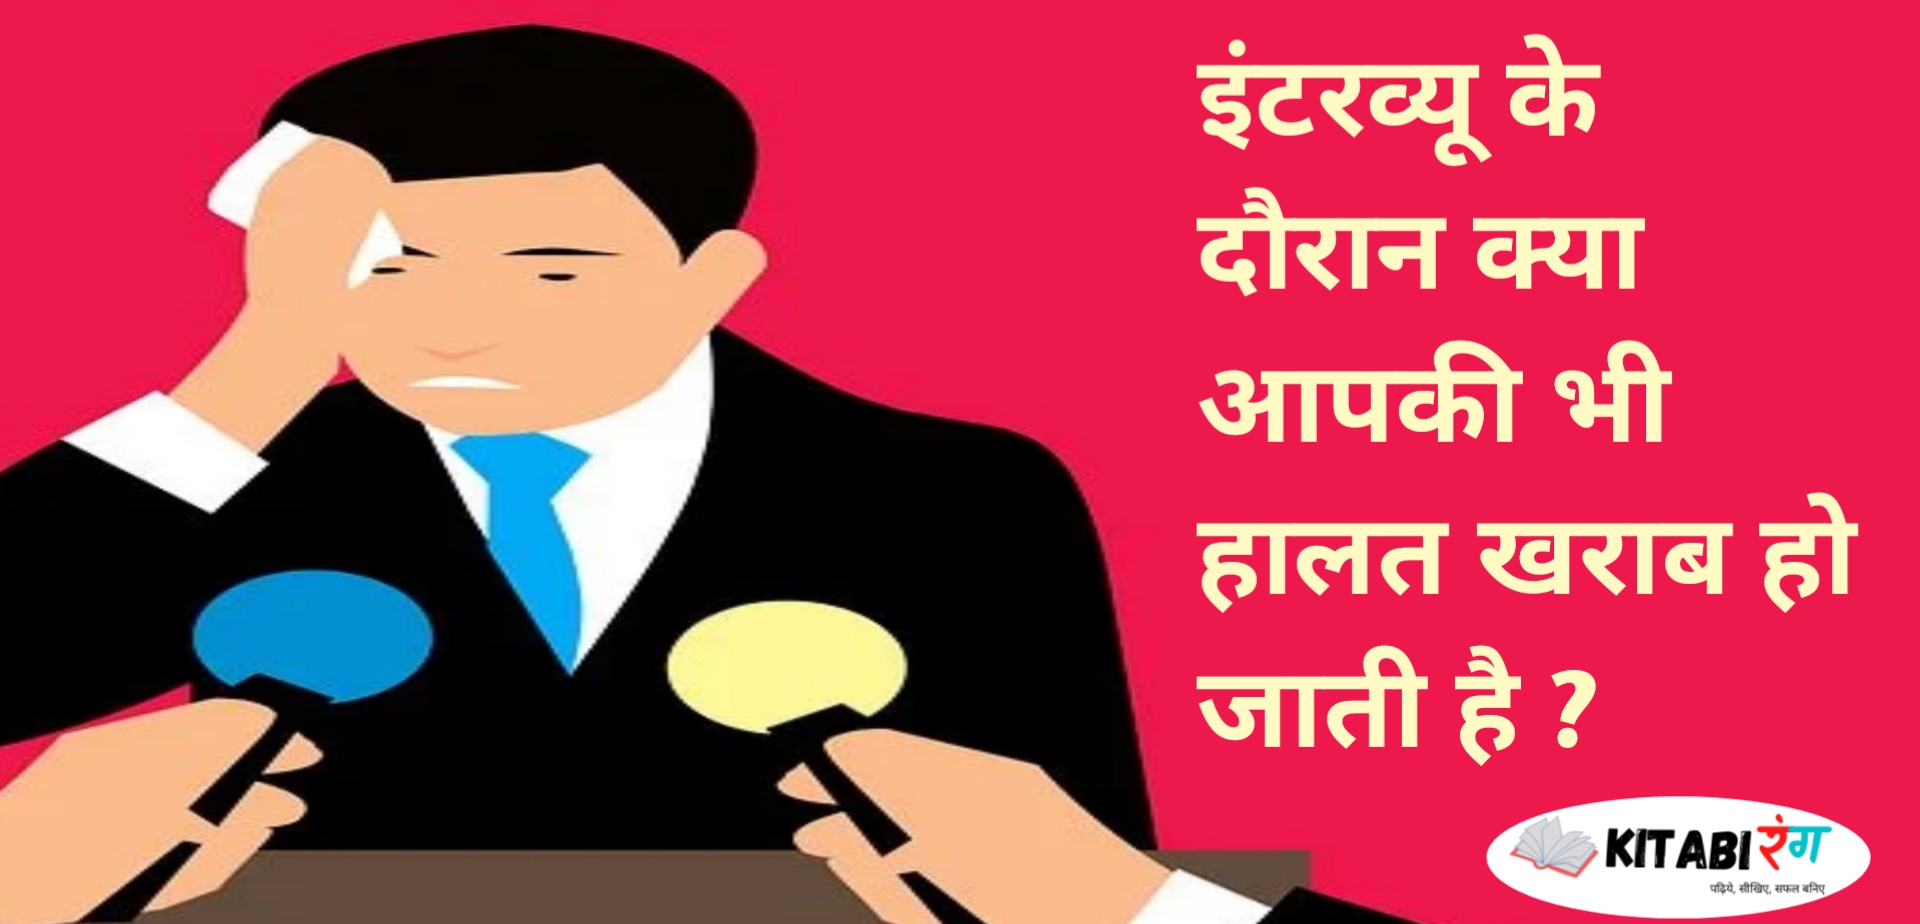 अपने बोलने के तरीके से लोगों को कैसे प्रभावित करे|Communicate to Influence Book Summary in Hindi